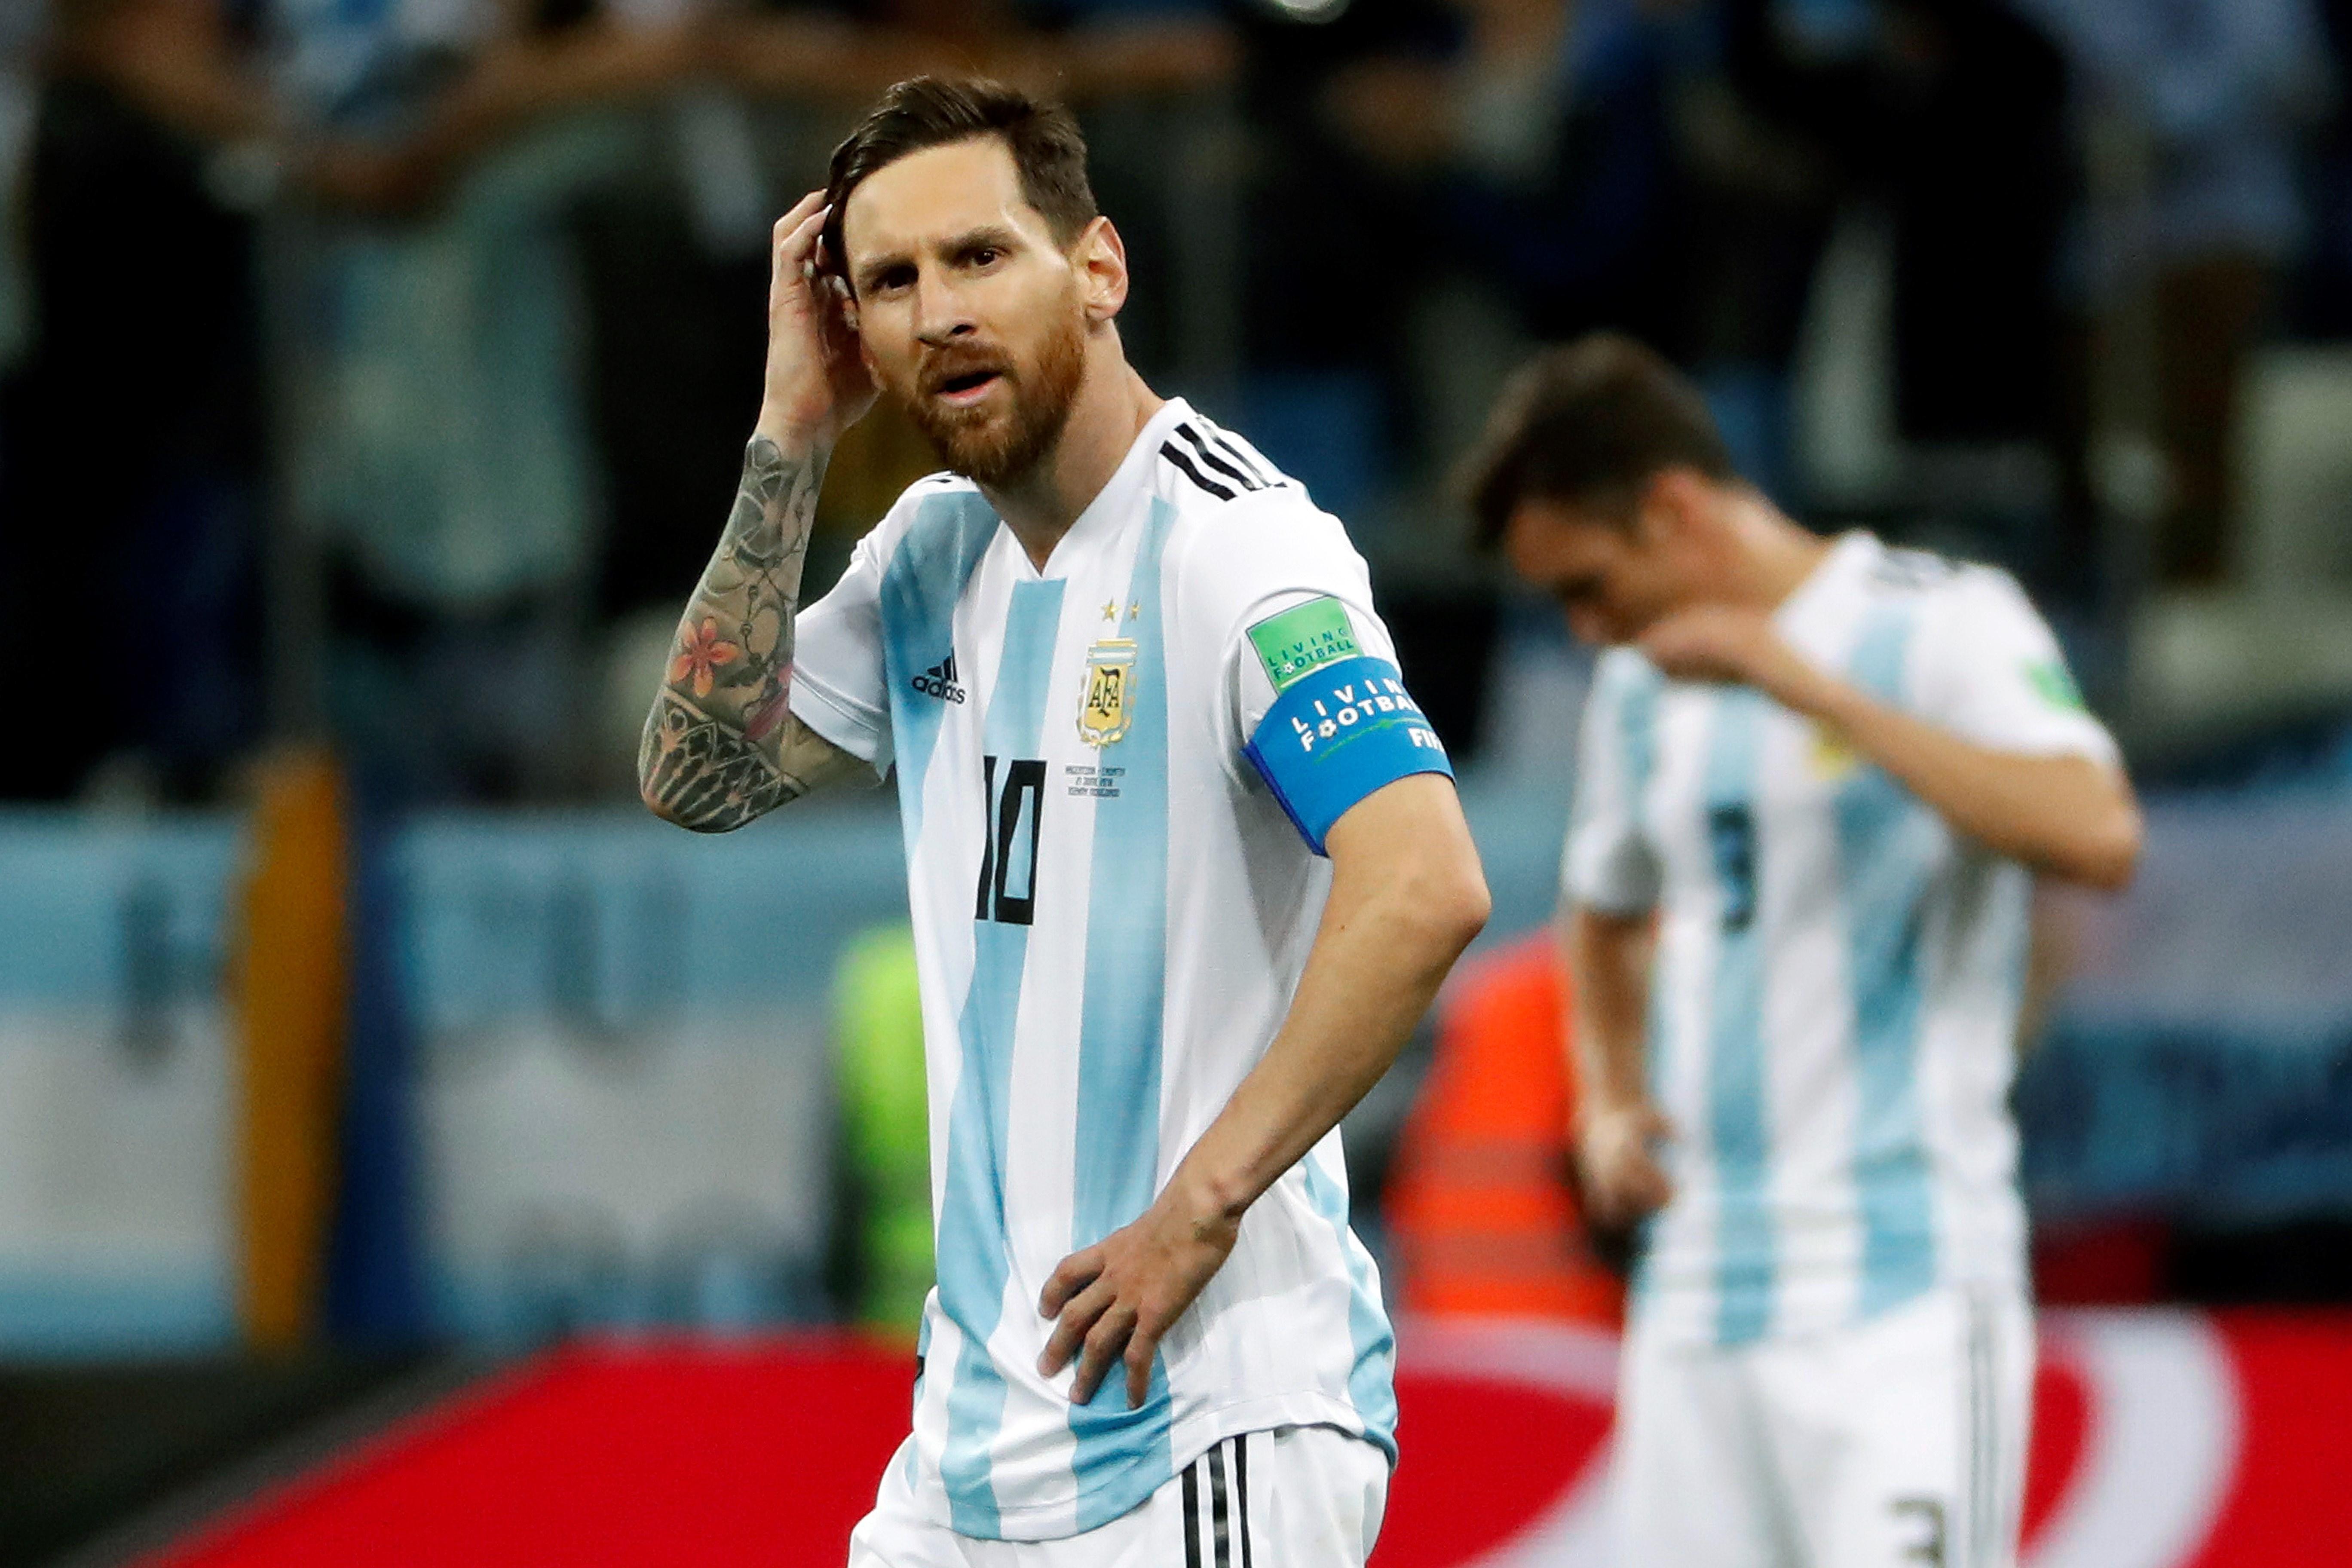 Condenan al hermano de Messi por portación ilegítima de arma en Argentina